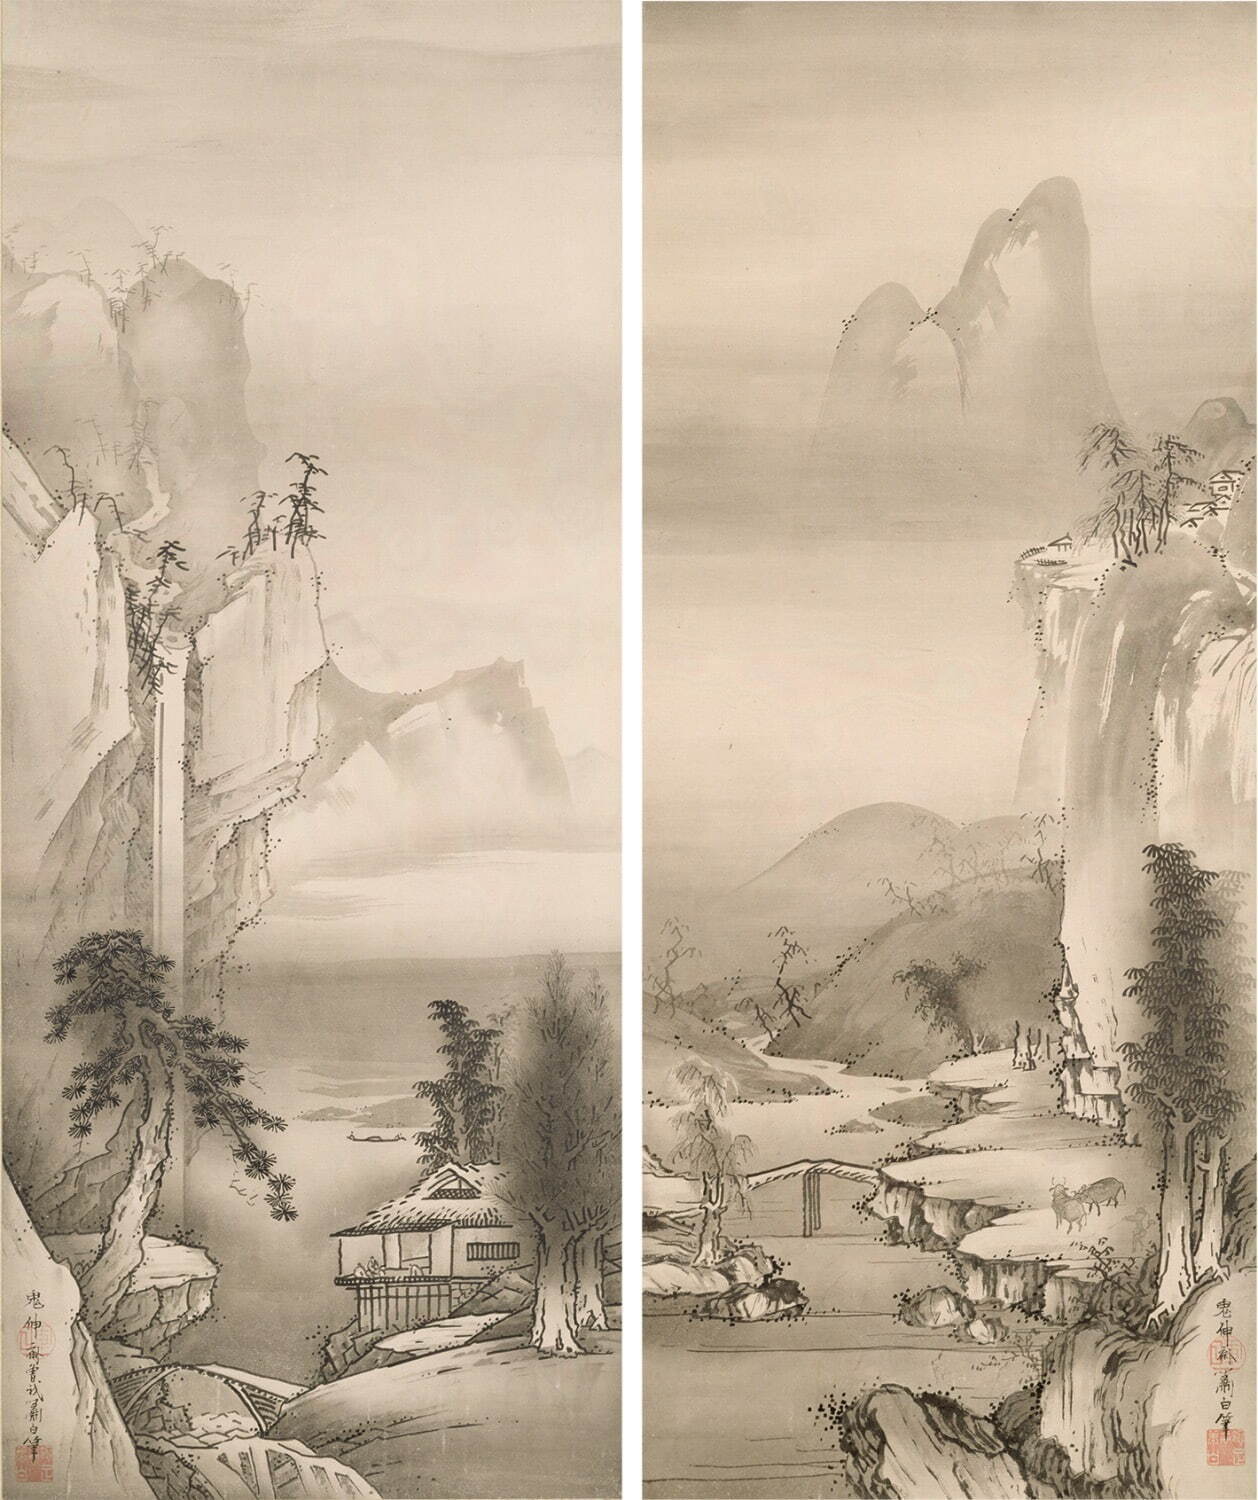 曽我蕭白《山水図》東京国立博物館
Image: TNM Image Archives